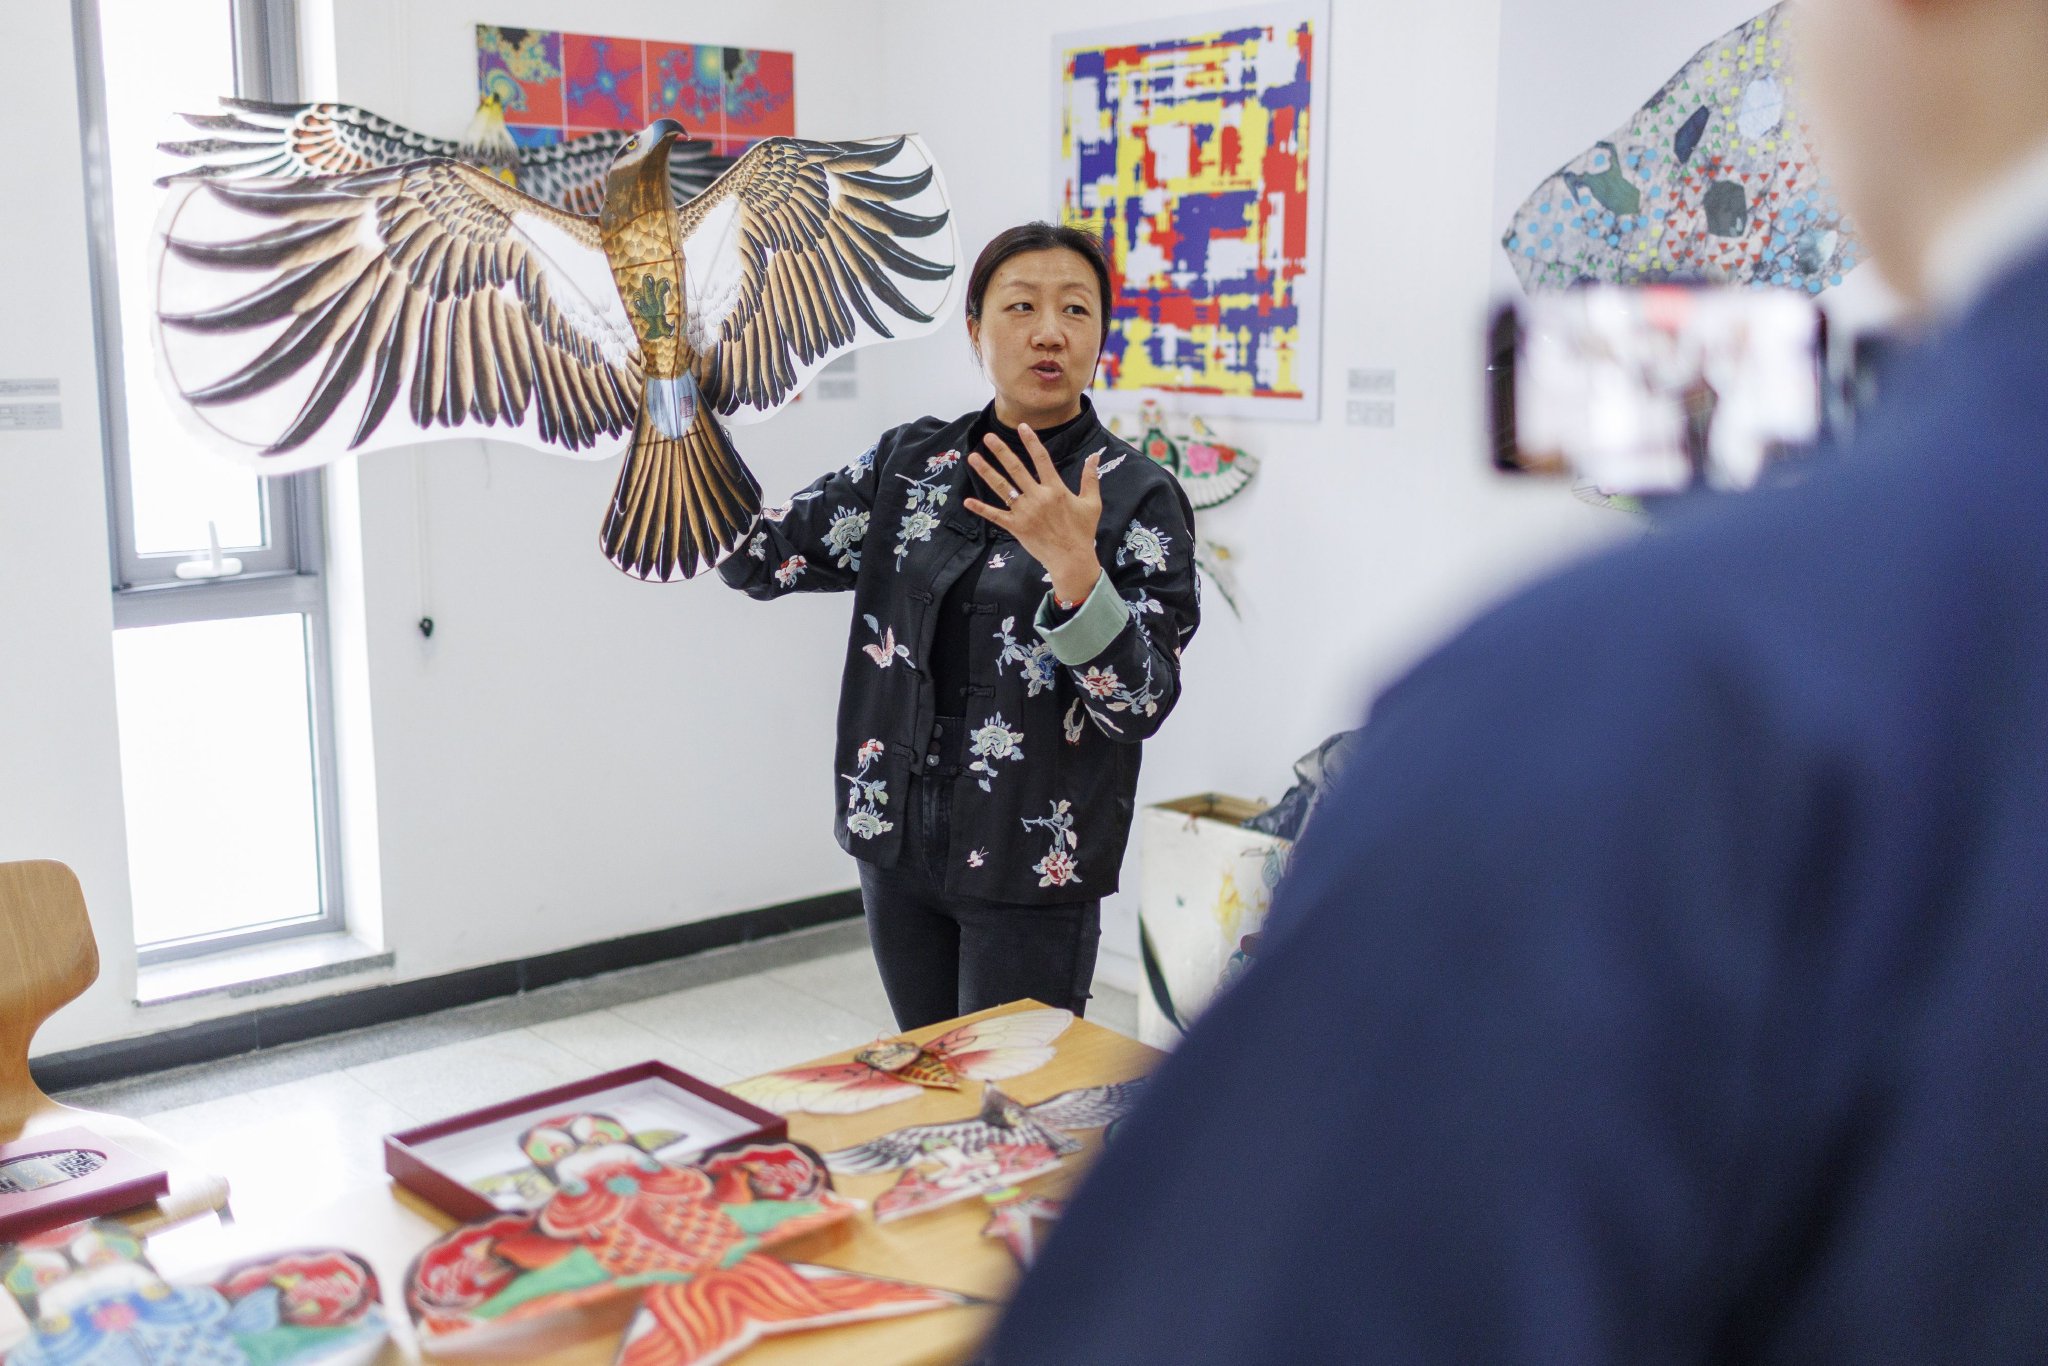 非遺集市，學生現場錄製風箏的介紹影片，傳播非遺文化。新京報記者 王子誠 攝